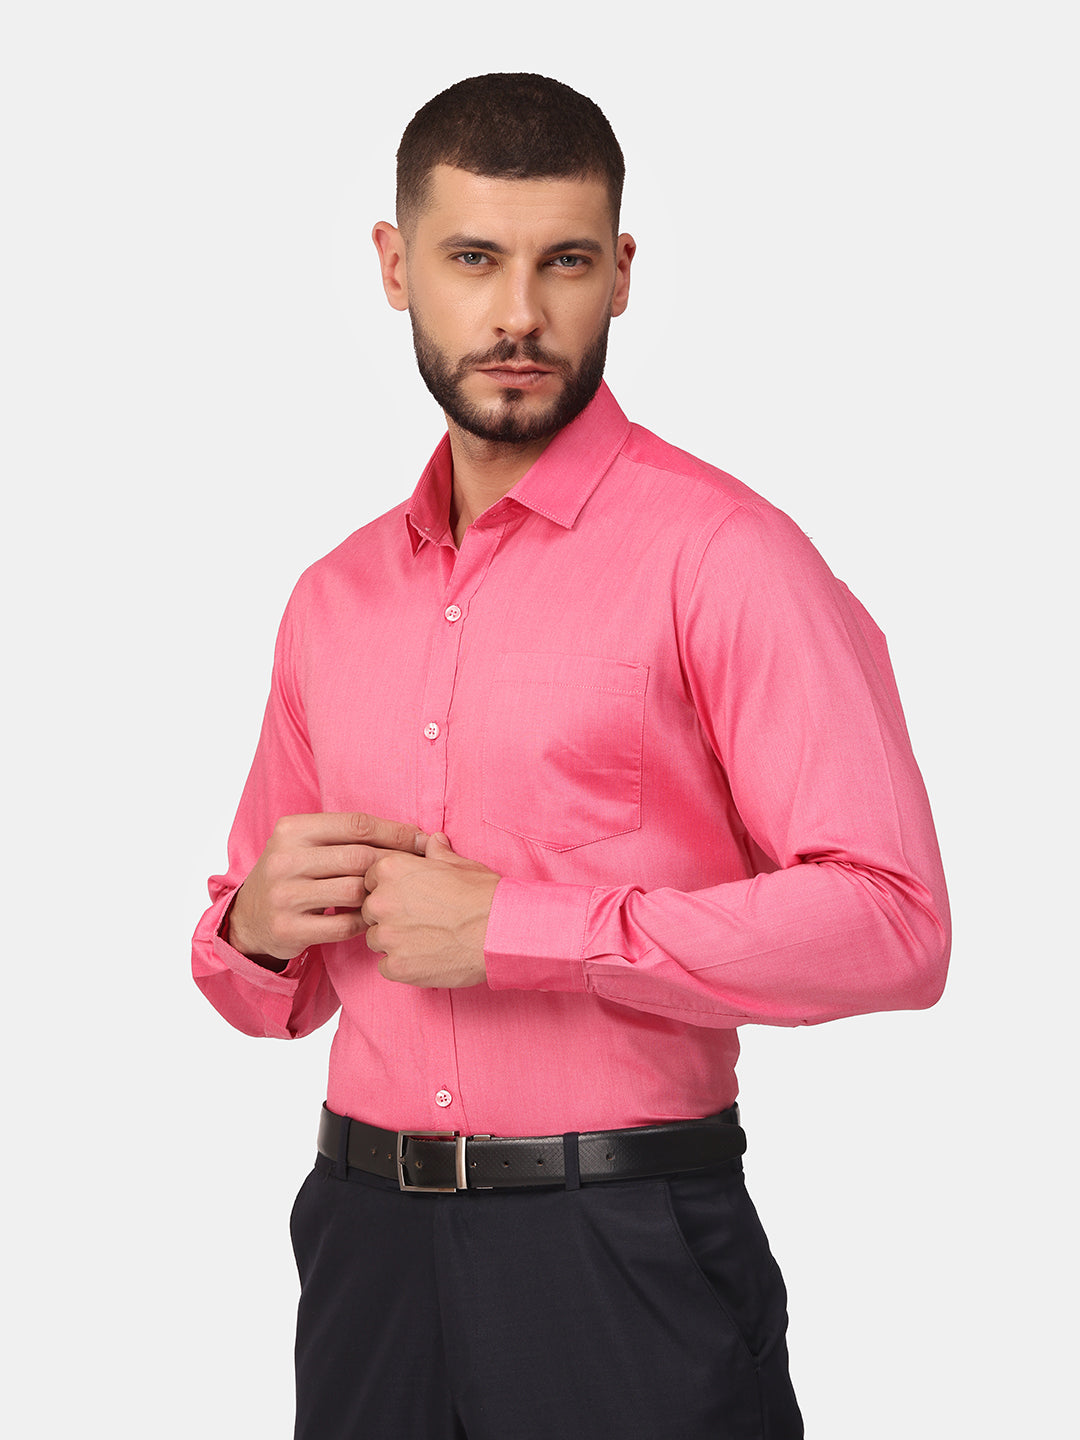 Copperline Men Pink Solid Formal Shirt Copperline